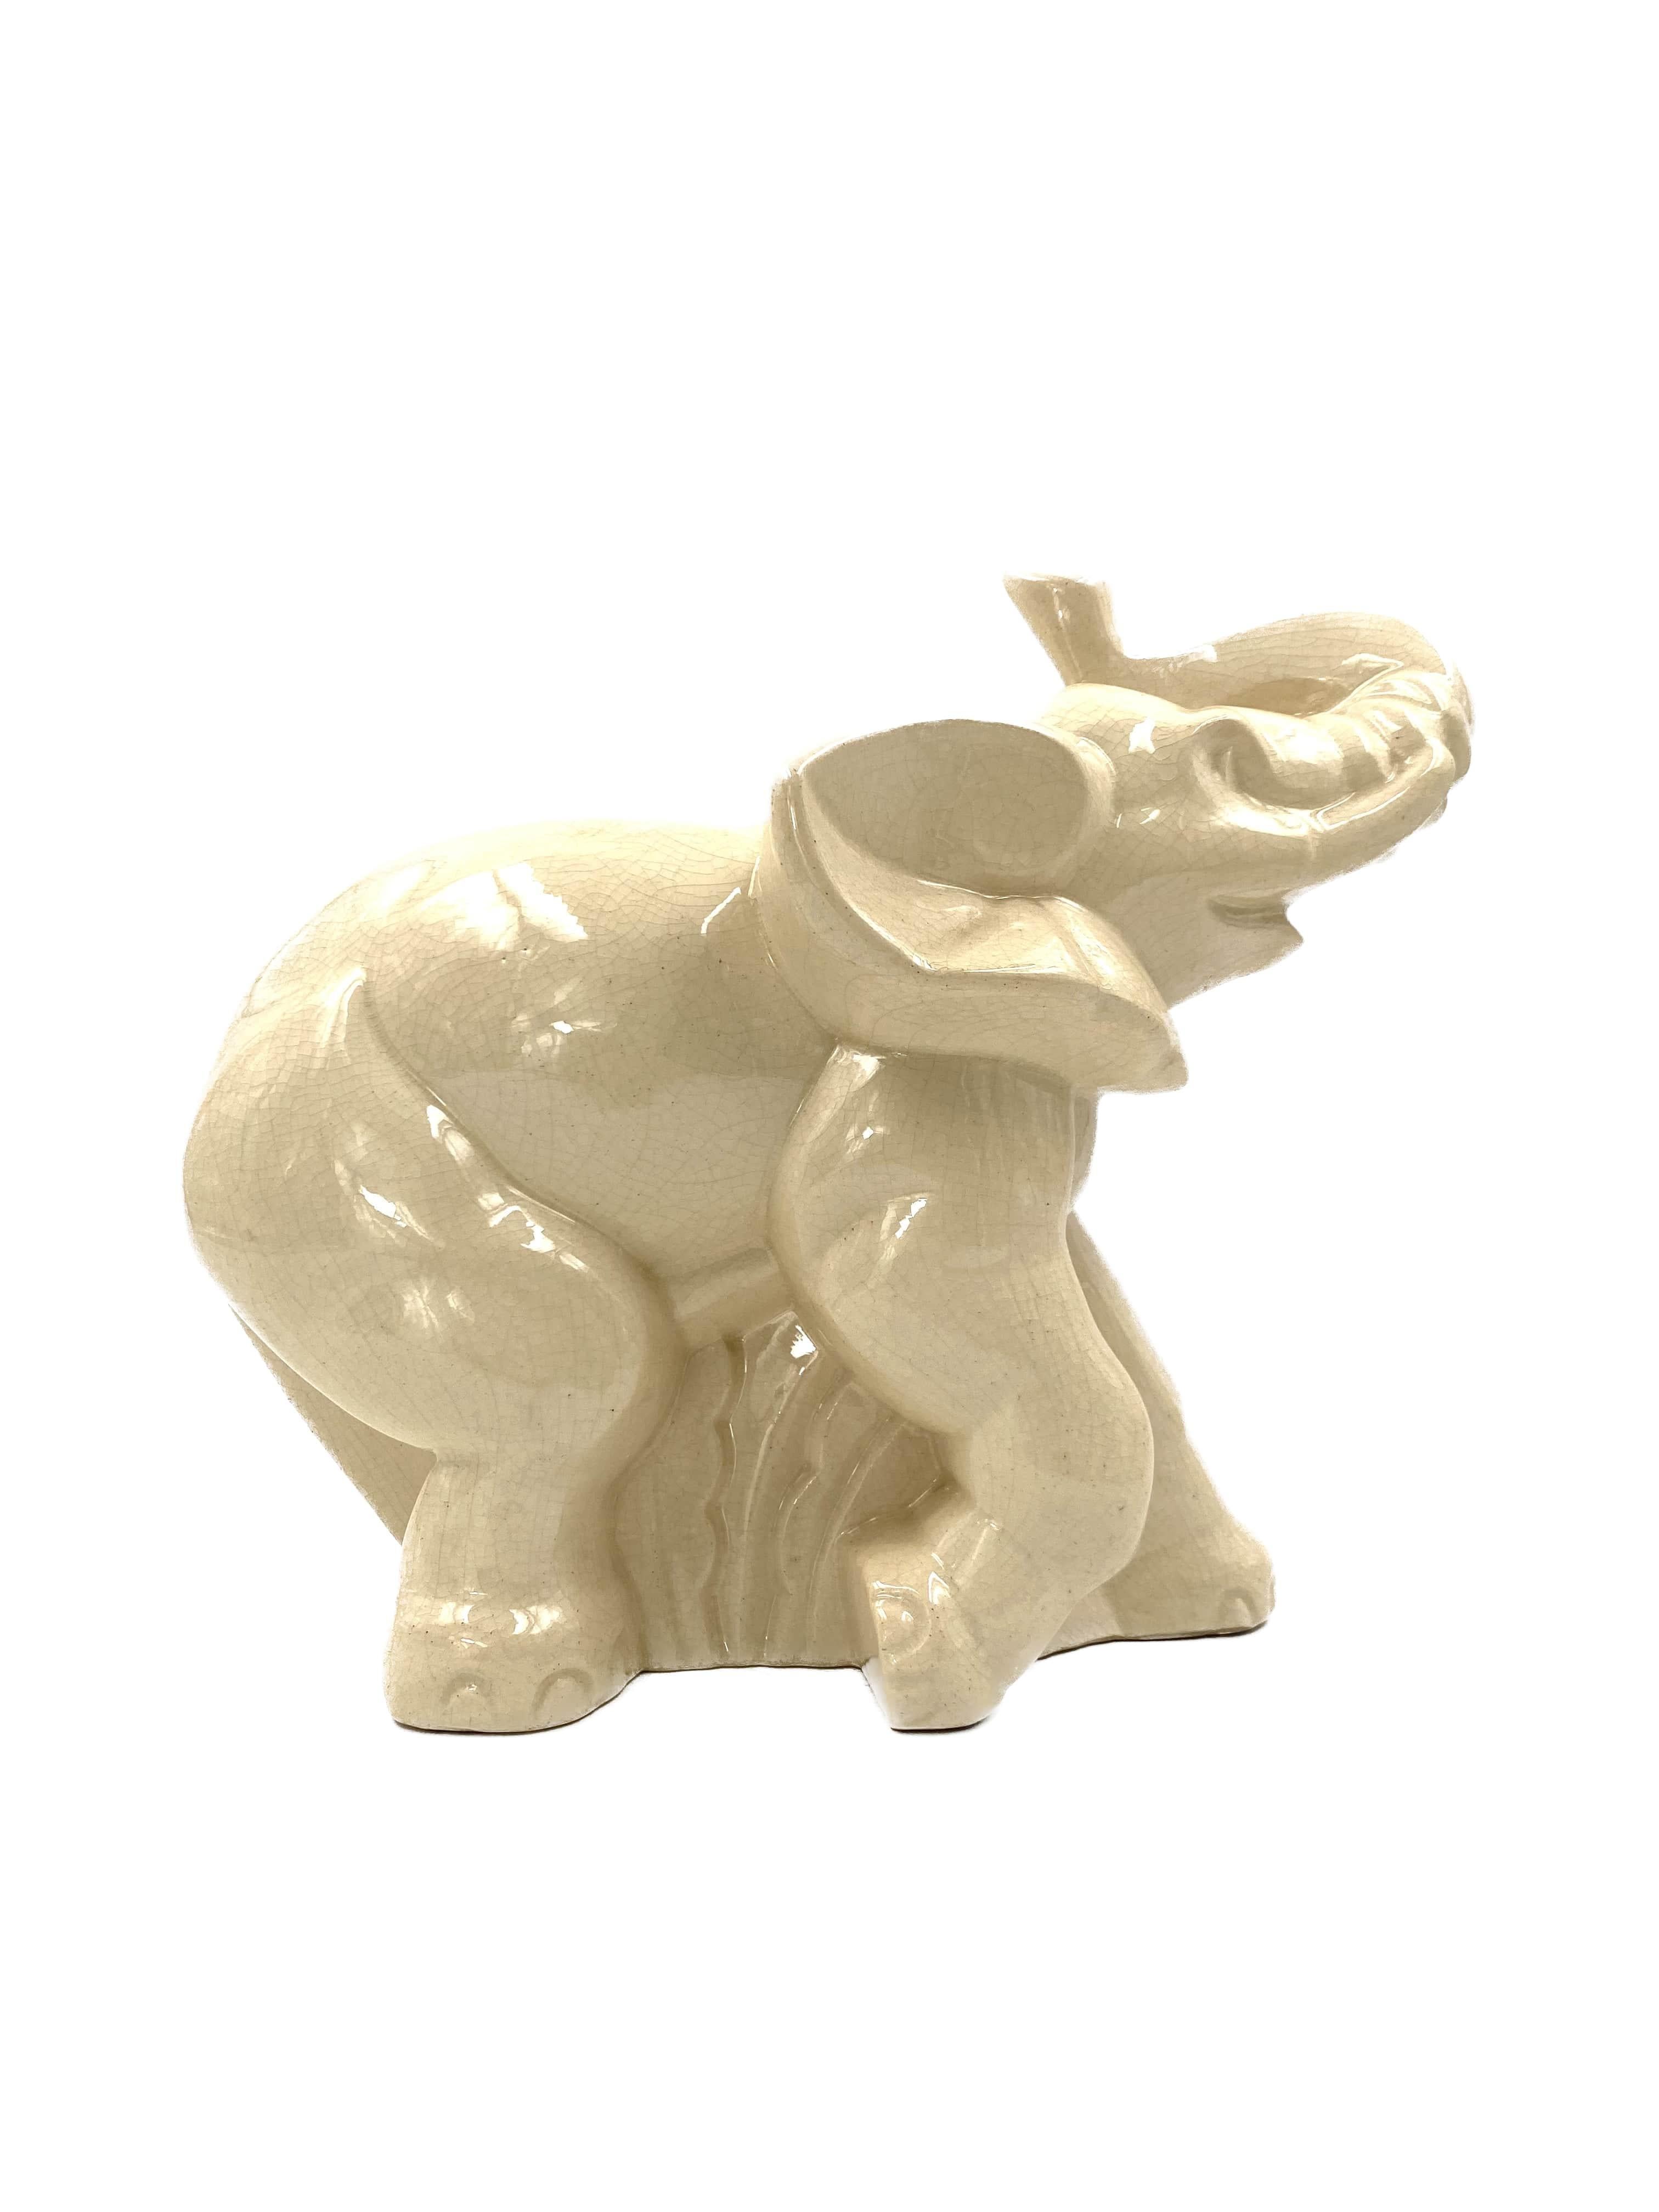 real ivory elephant figurine